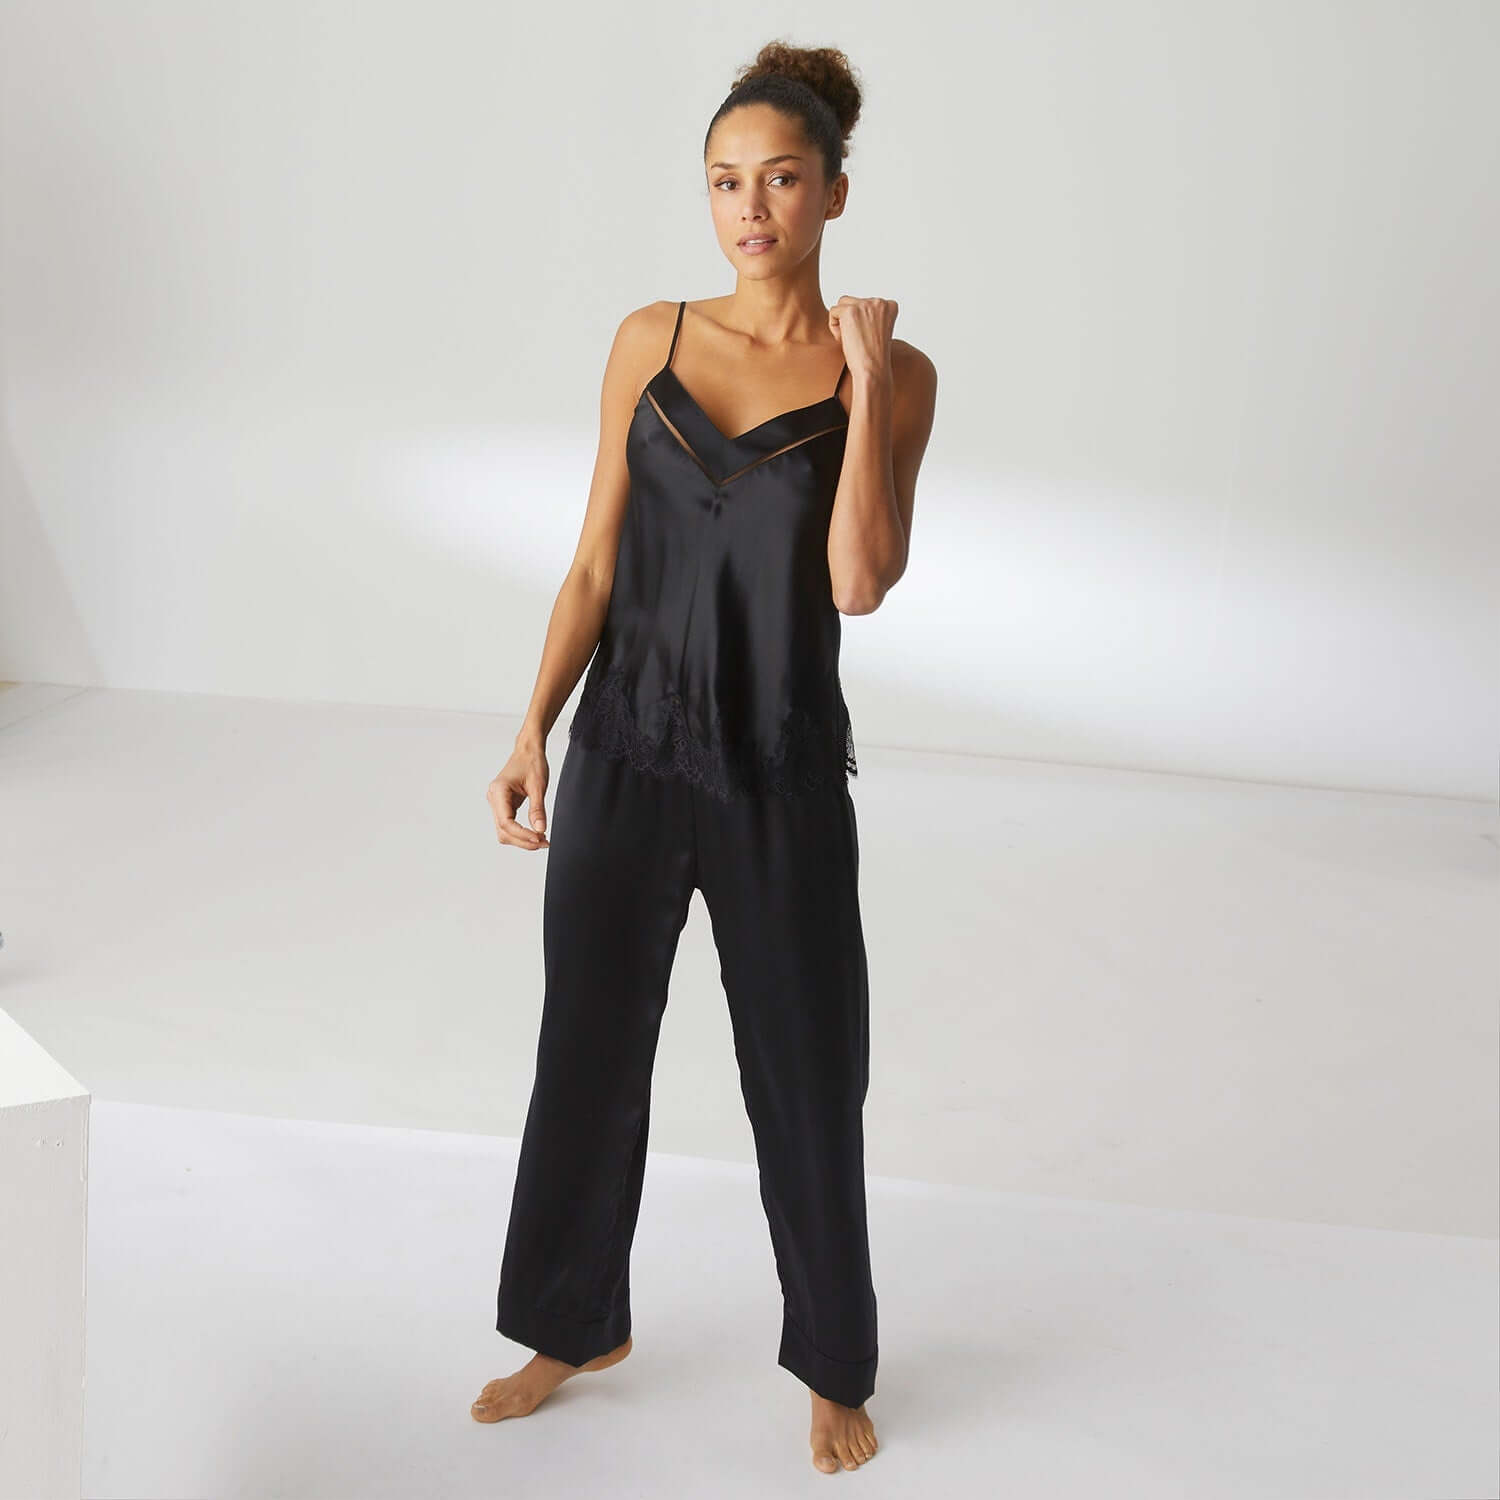 Simone Perele Dream Silk Pant Color: Black Size: XS at Petticoat Lane  Greenwich, CT